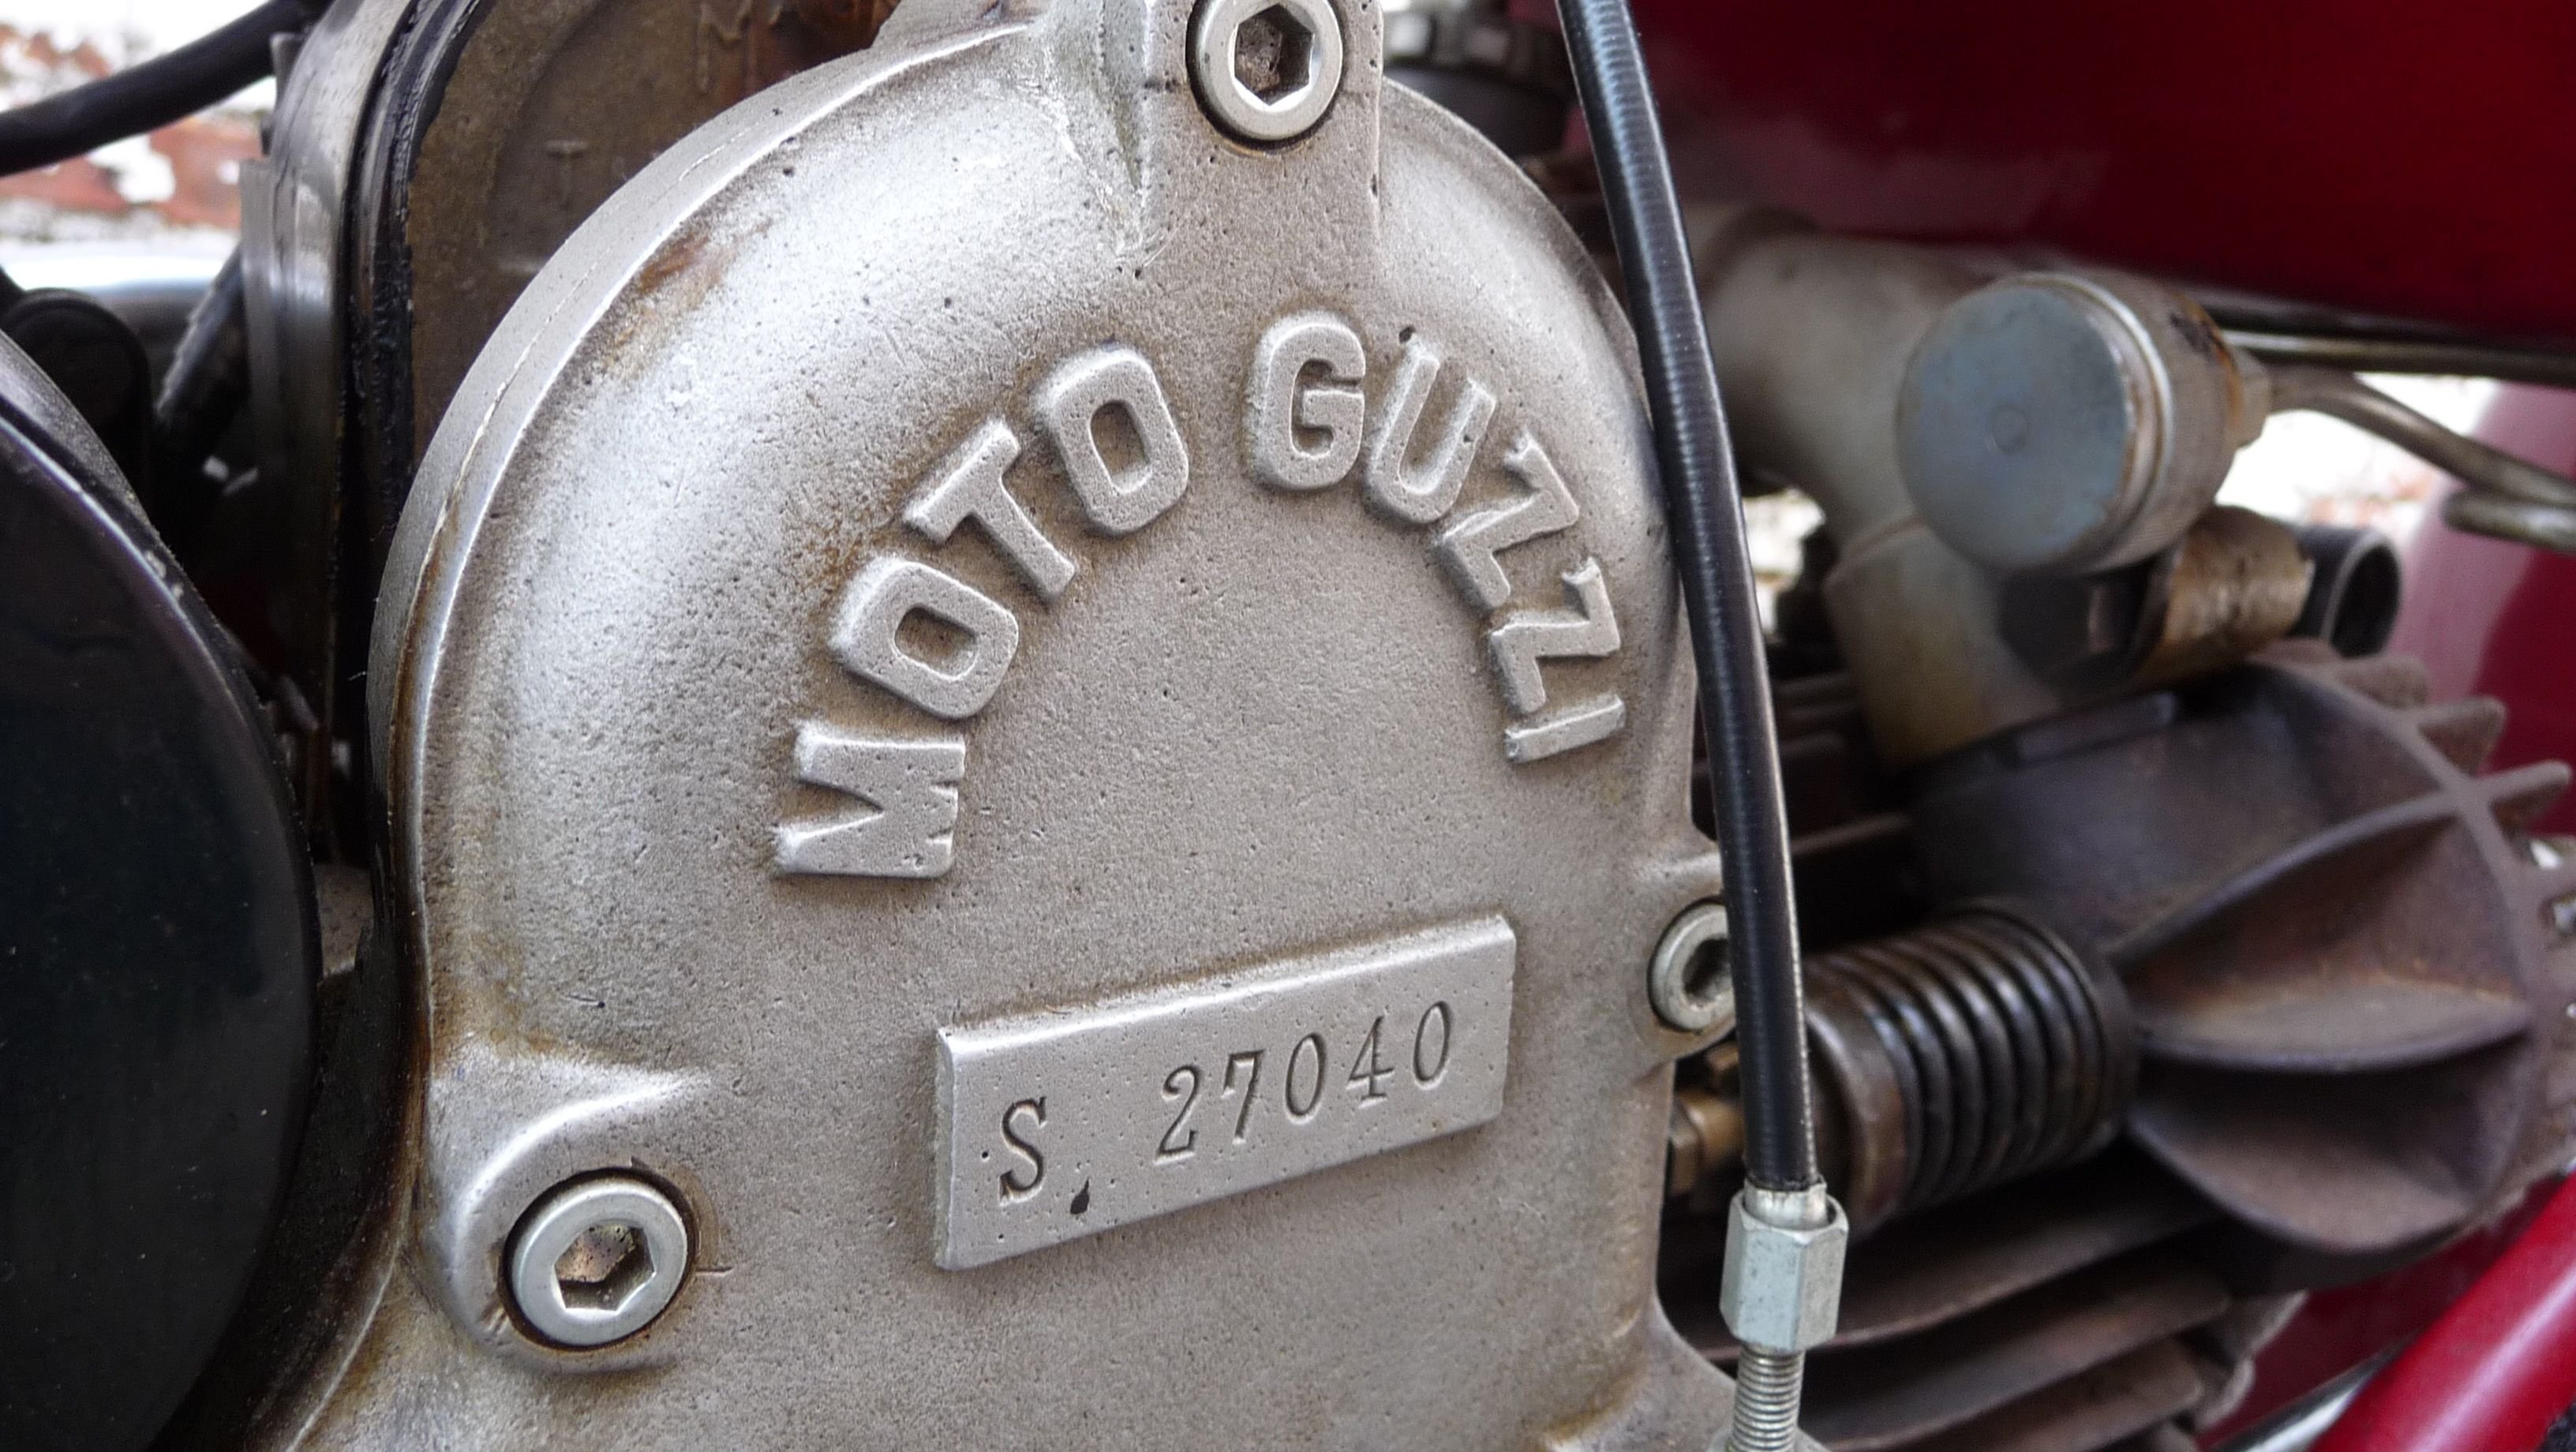 1935 Moto Guzzi 500 S